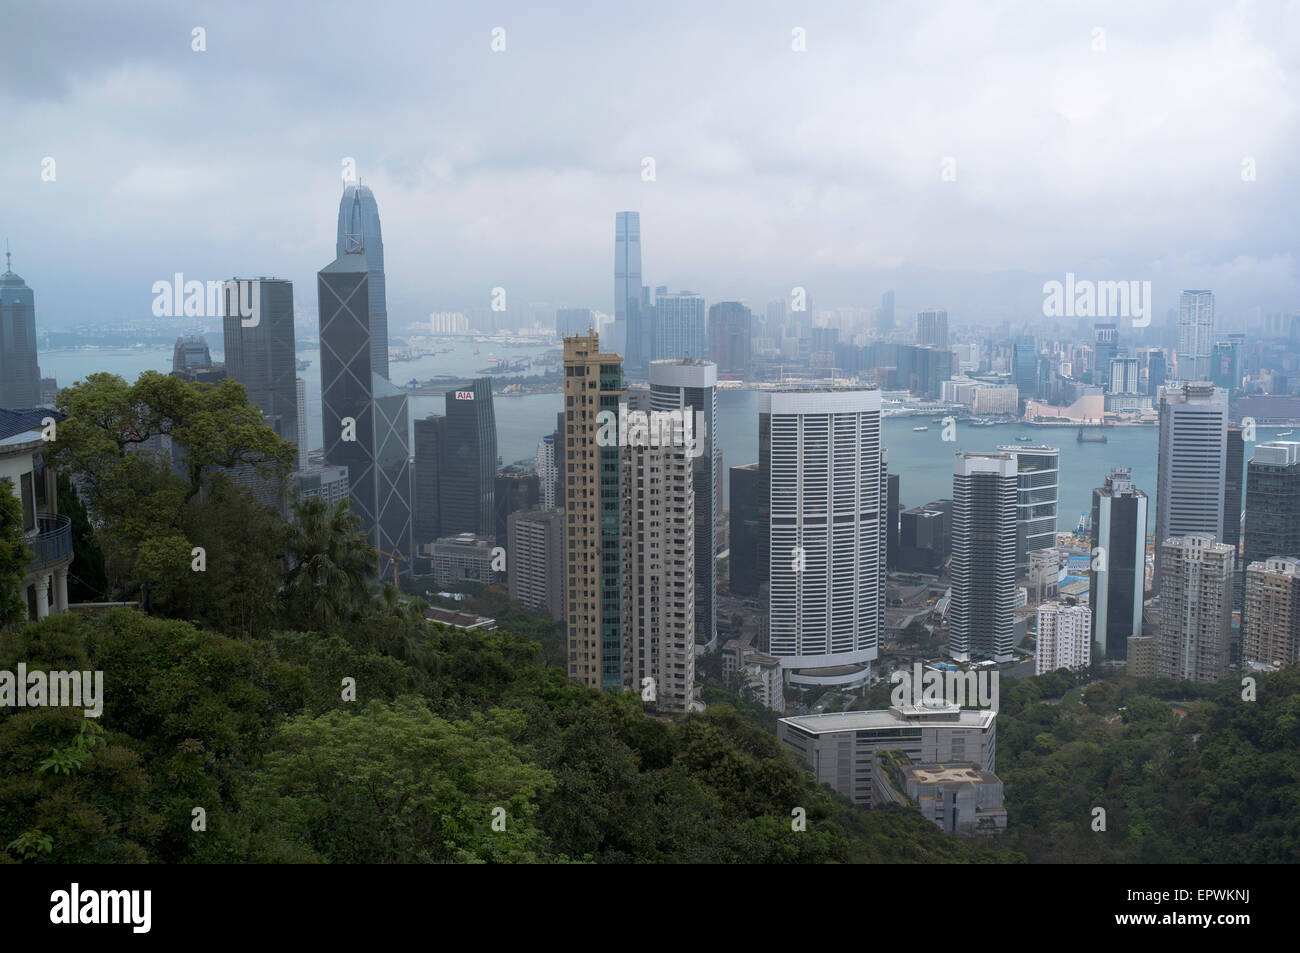 dh  CENTRAL HONG KONG Hong Kong smog city pollution Stock Photo